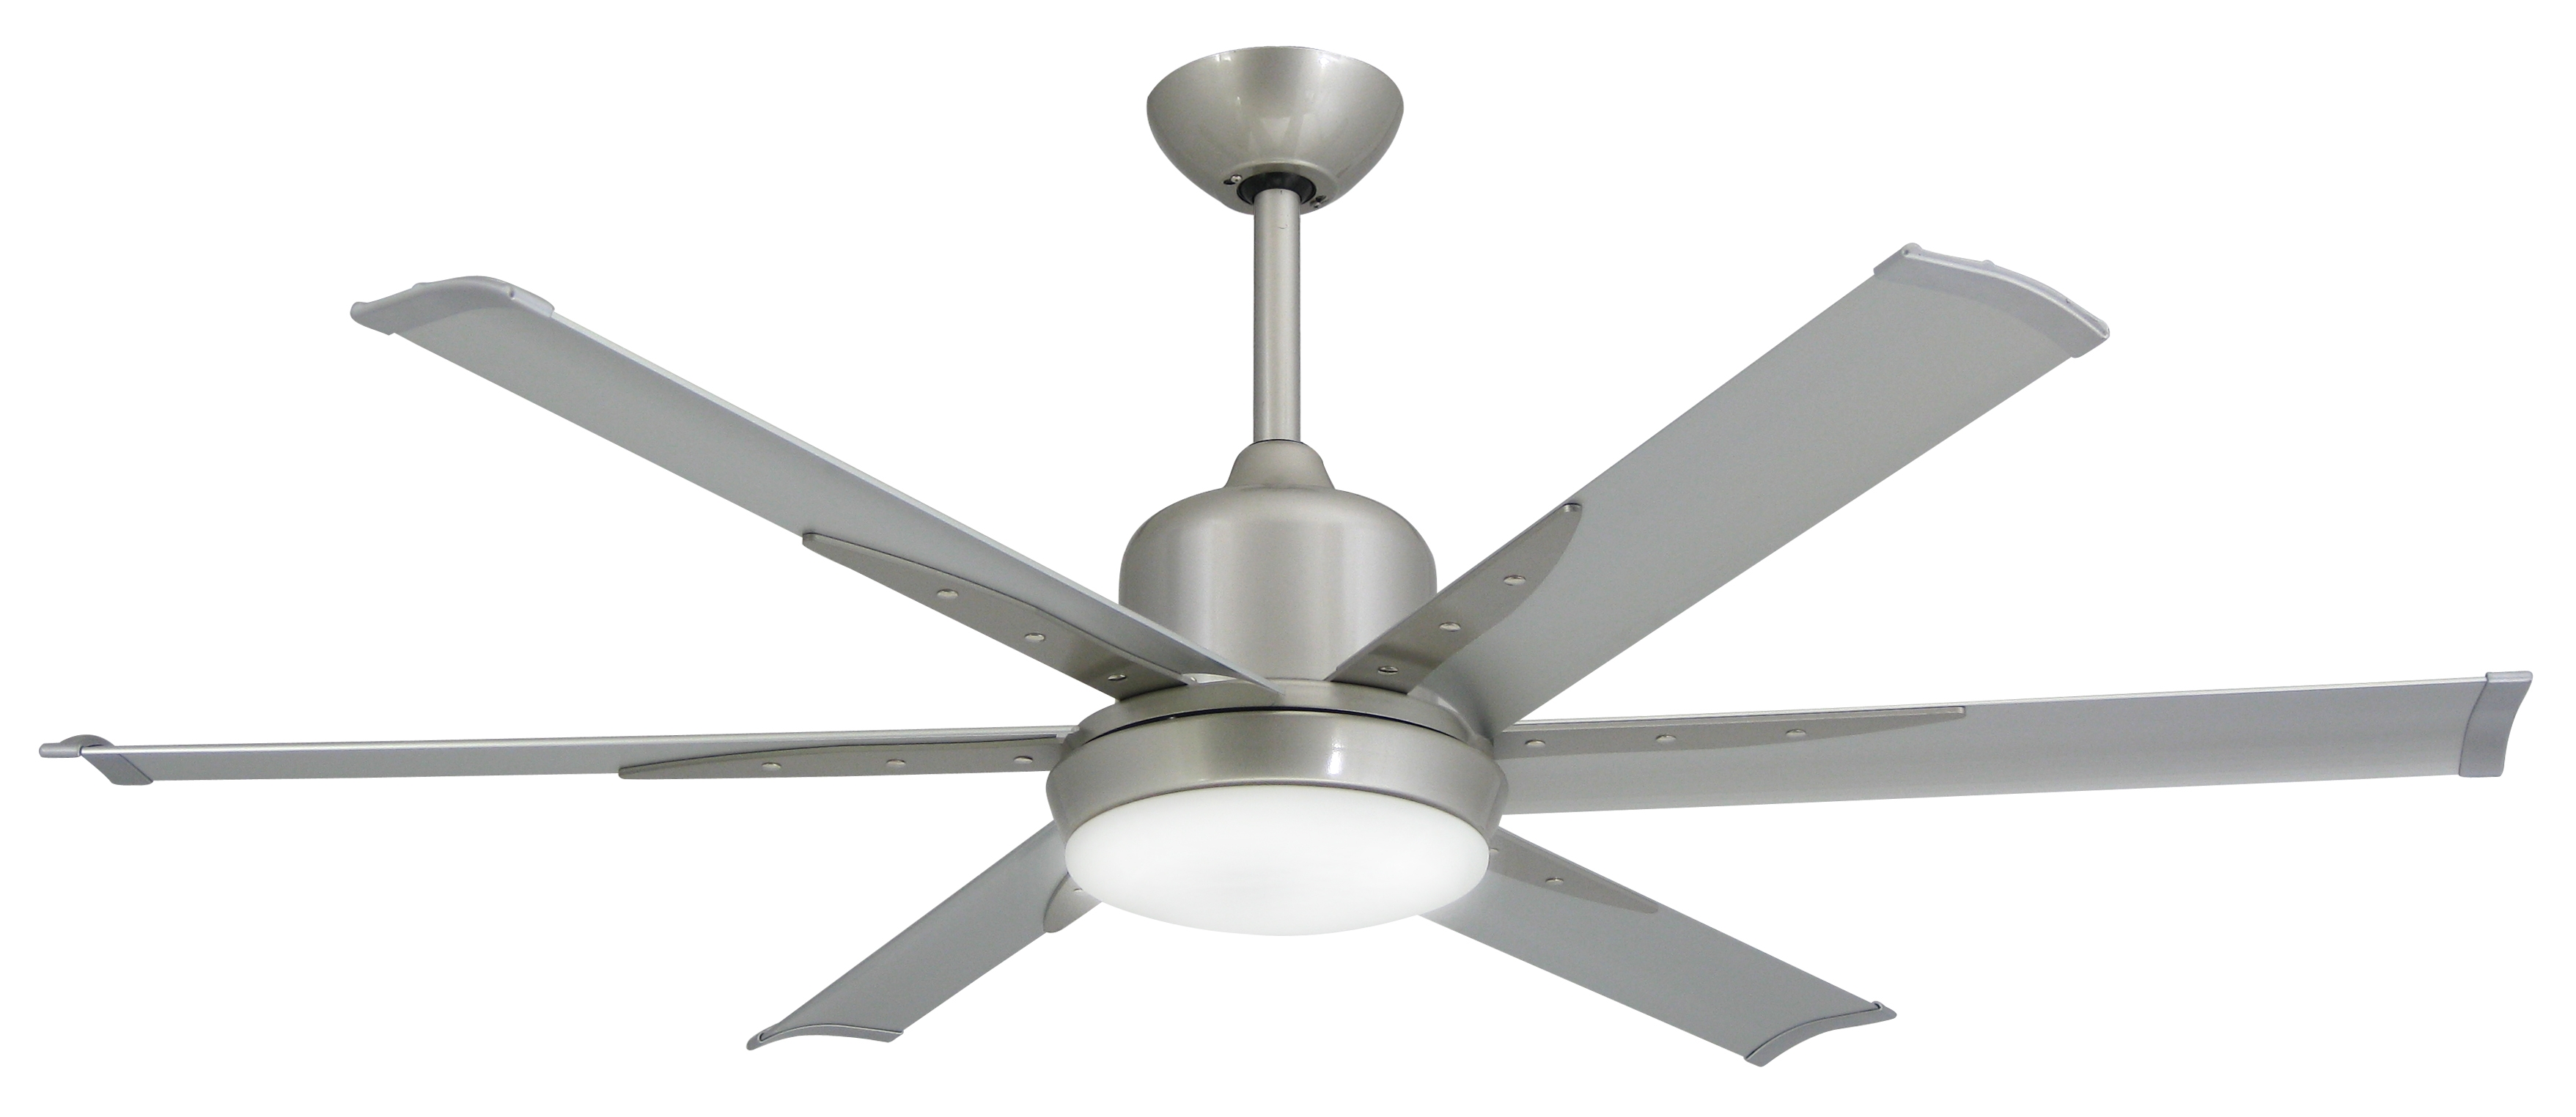 White Industrial Ceiling Fan With Lightindustrial ceiling fans dans fan city